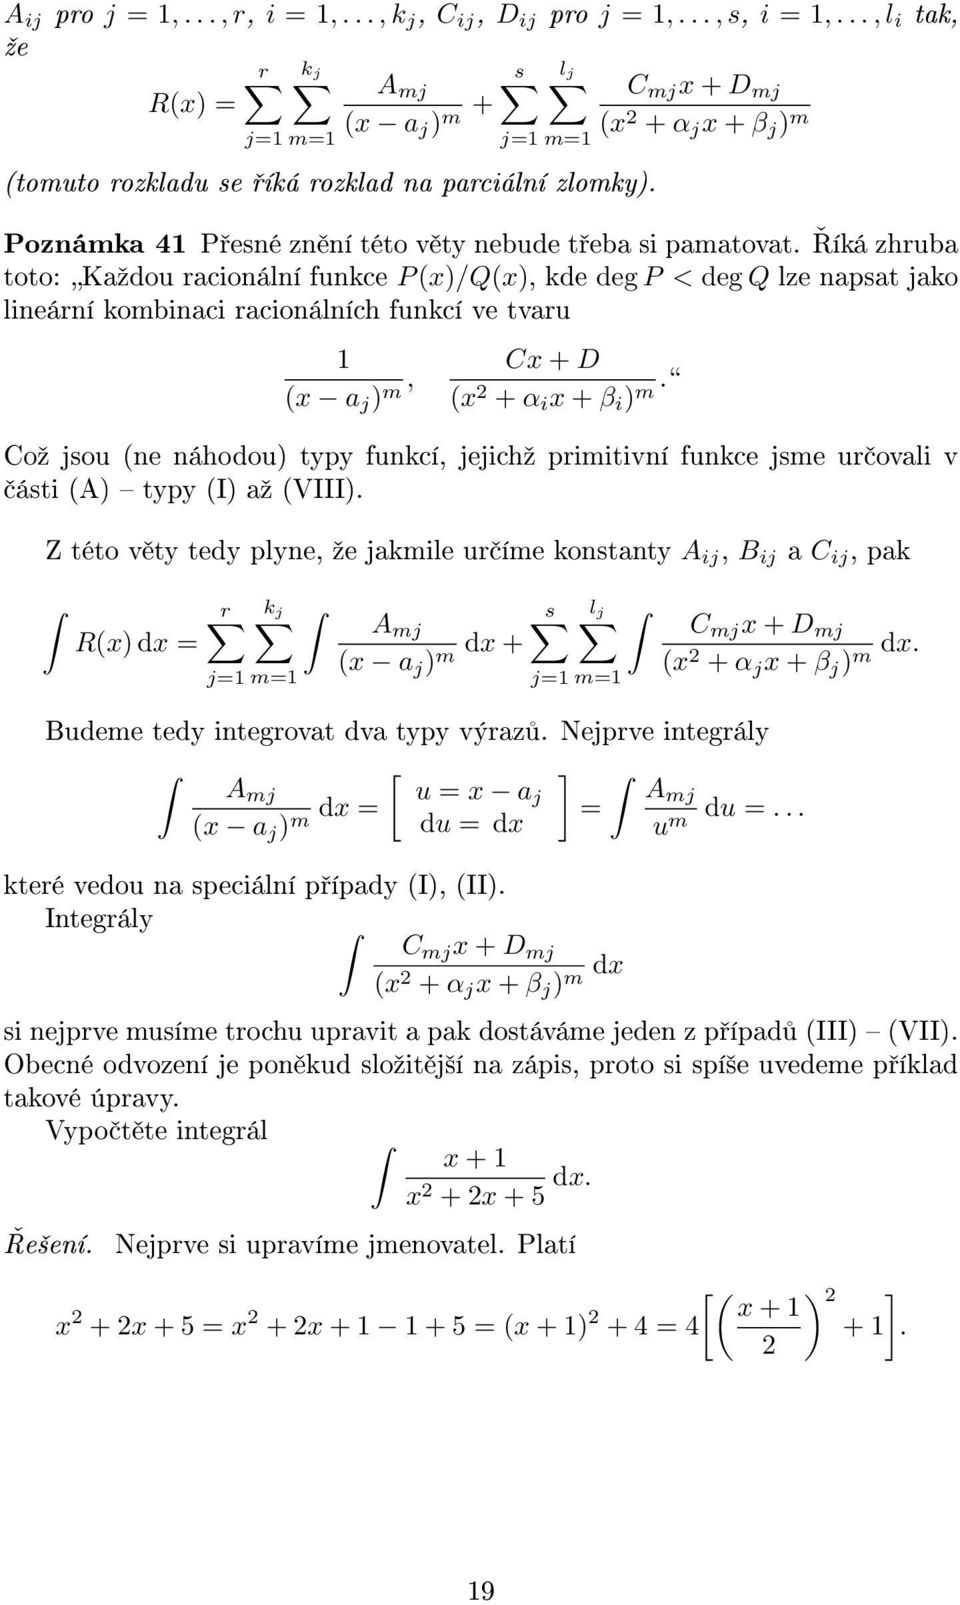 íká zhruba toto: Kaºdou racionální funkce P ()/Q(), kde deg P < deg Q lze napsat jako lineární kombinaci racionálních funkcí ve tvaru ( a j ) m, C + D ( + α i + β i ) m.